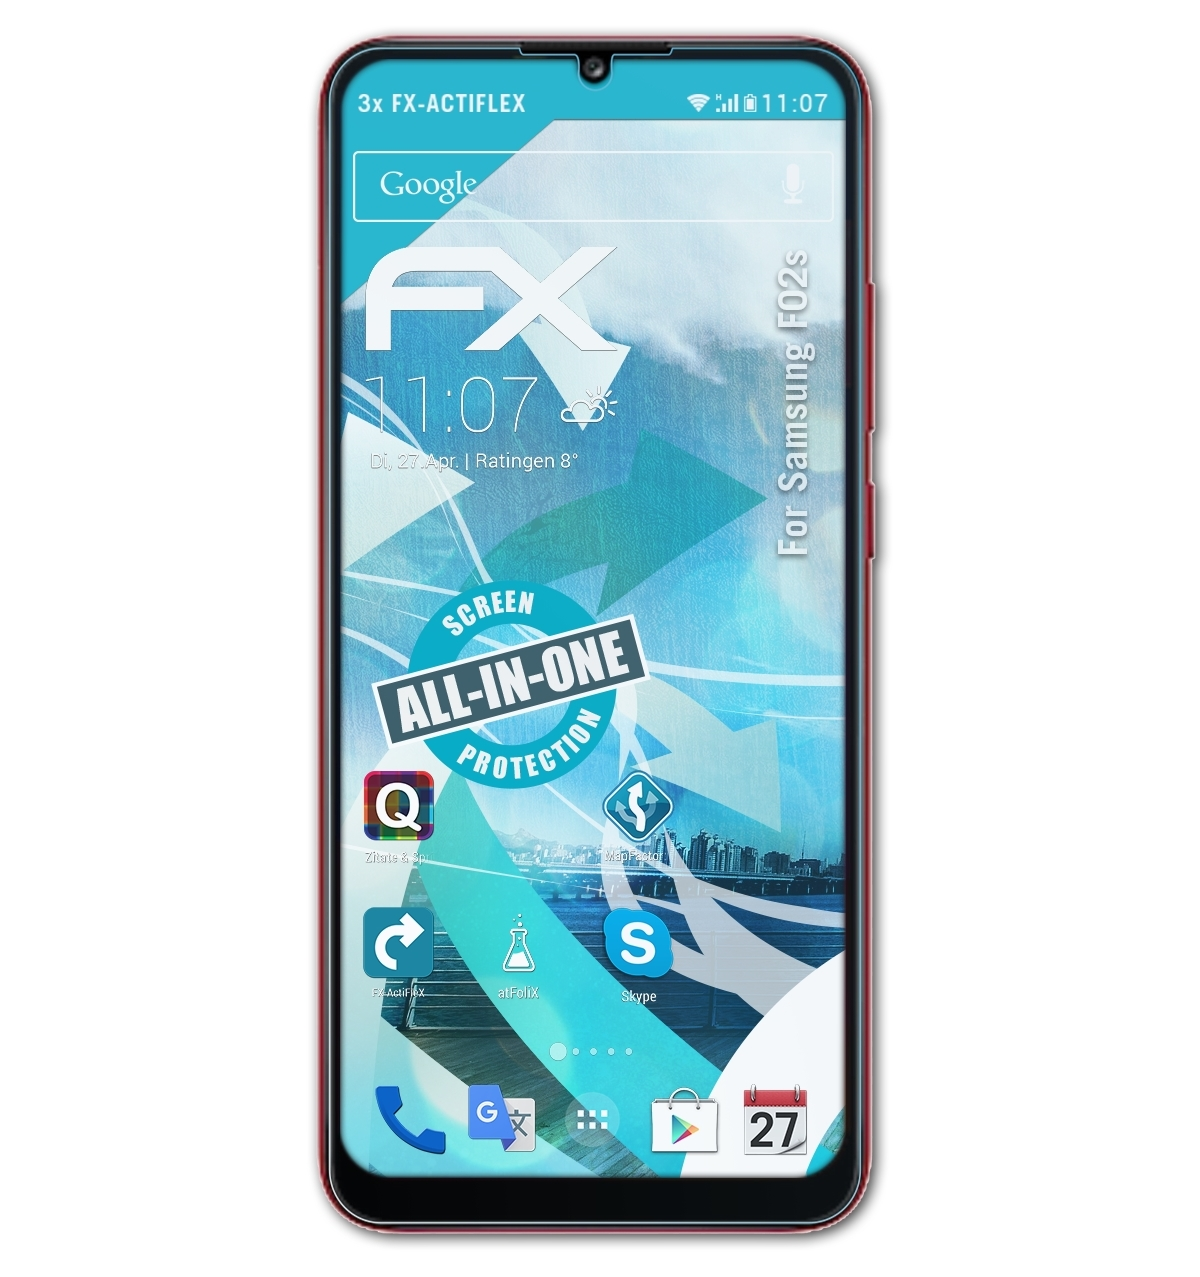 FX-ActiFleX F02s) ATFOLIX Samsung Displayschutz(für 3x